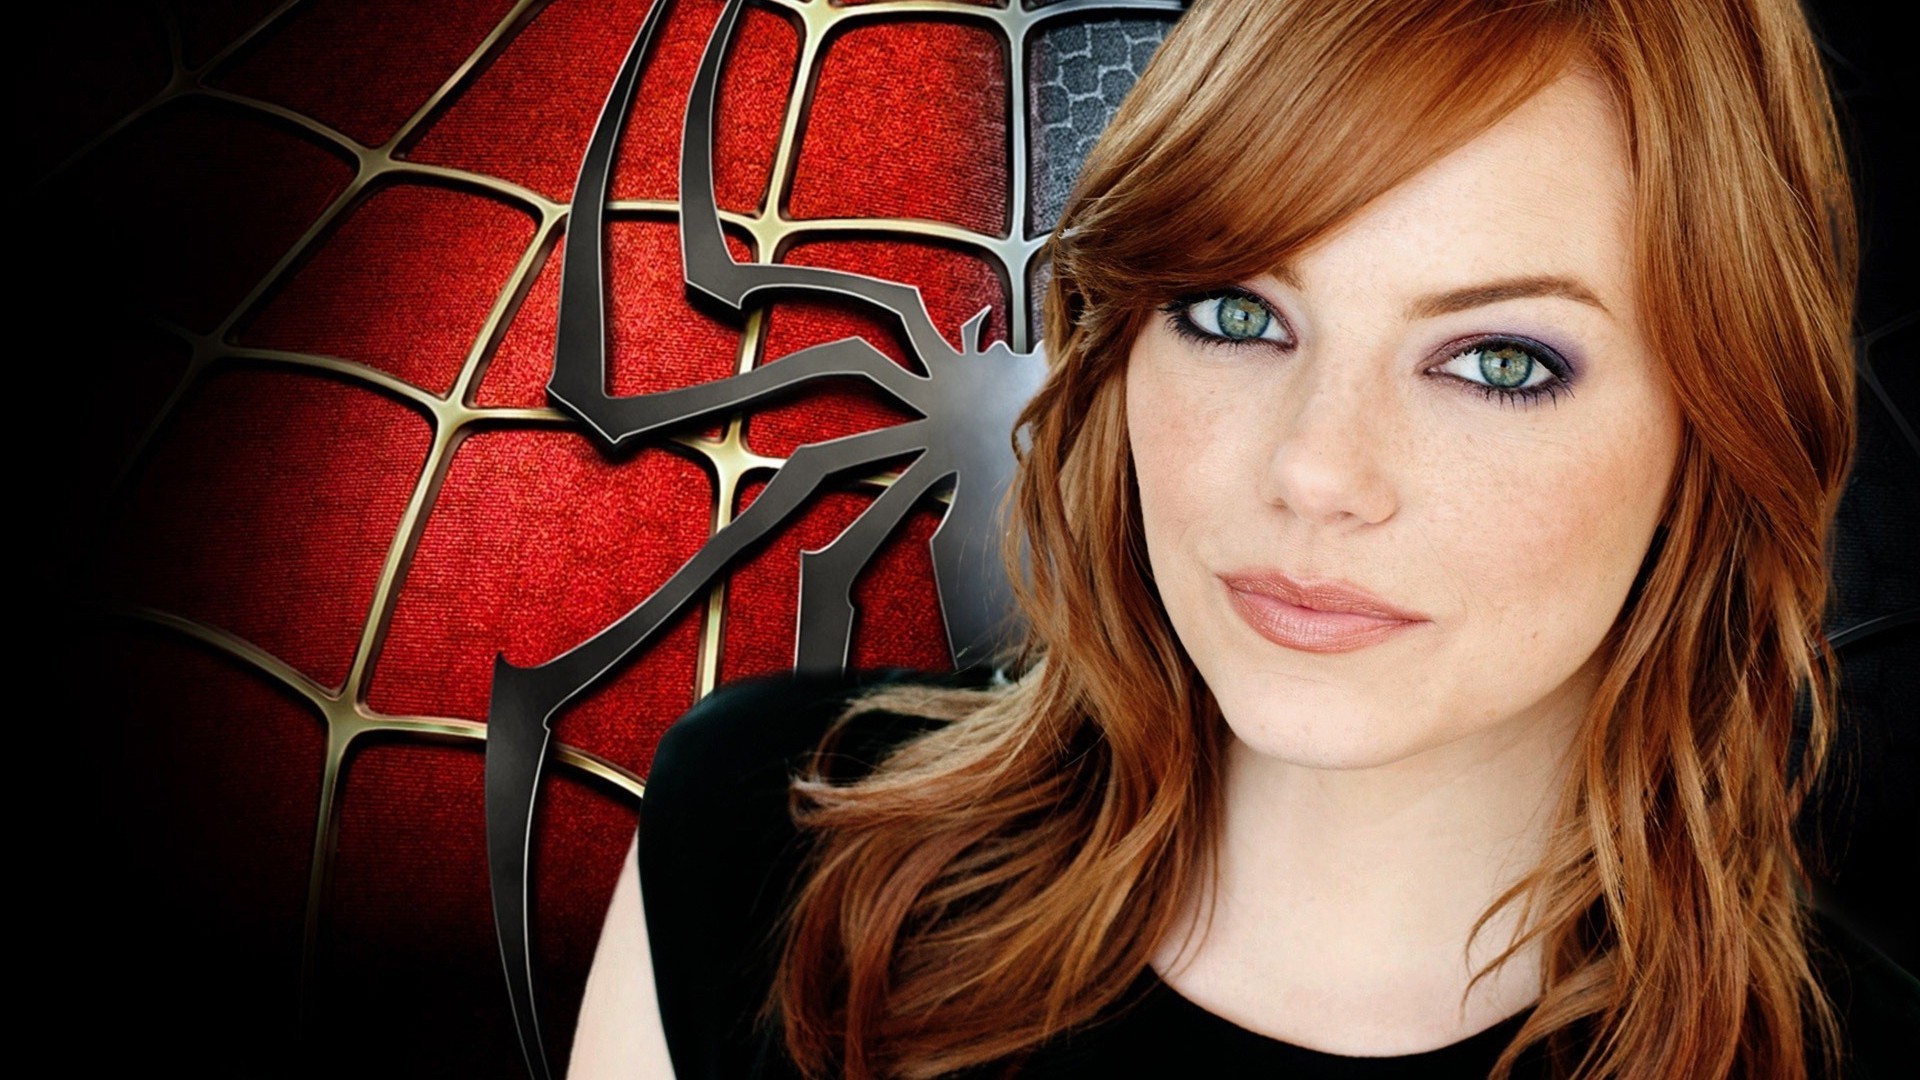 Spider Man, Movies, The Amazing Spider Man, Emma Stone - Emma Stone Movies Spiderman , HD Wallpaper & Backgrounds